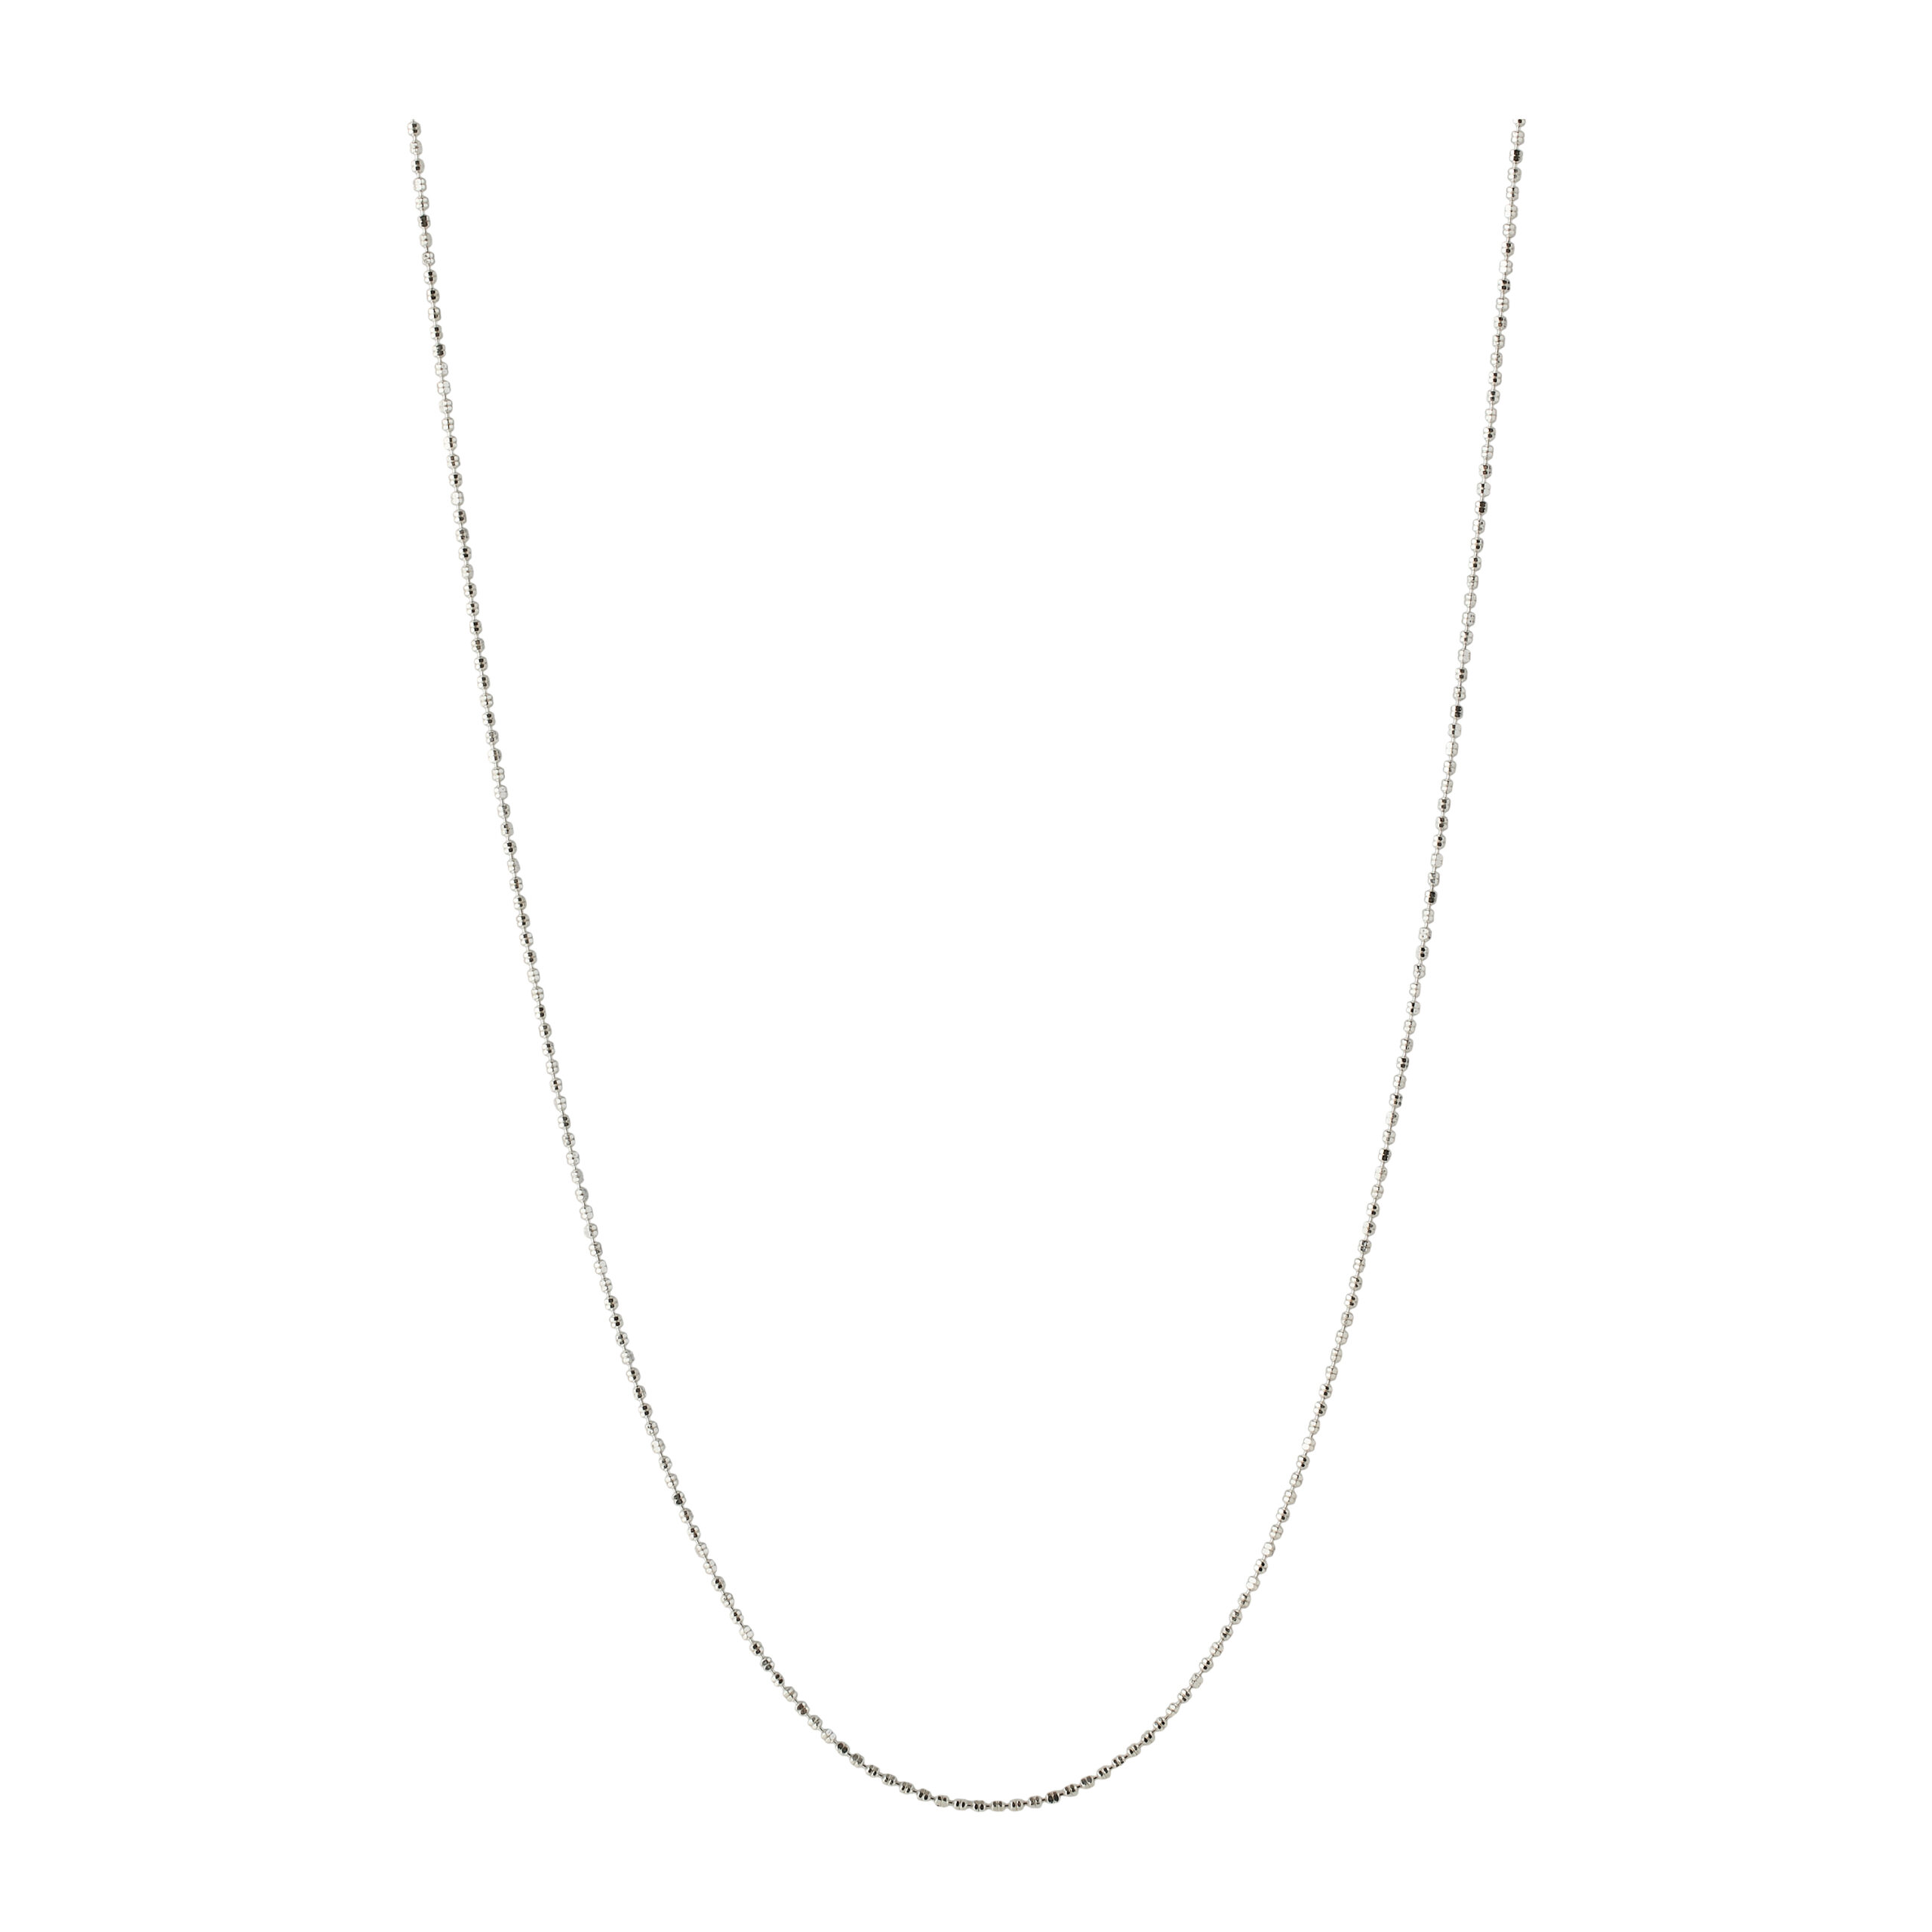 Få Nelly Necklace: Et smukt smykke med klassisk design, tilgængeligt i sølv og forgyldt sølv, justerbar længde på 40-45 cm, lavet med certificeret genbrugssølv